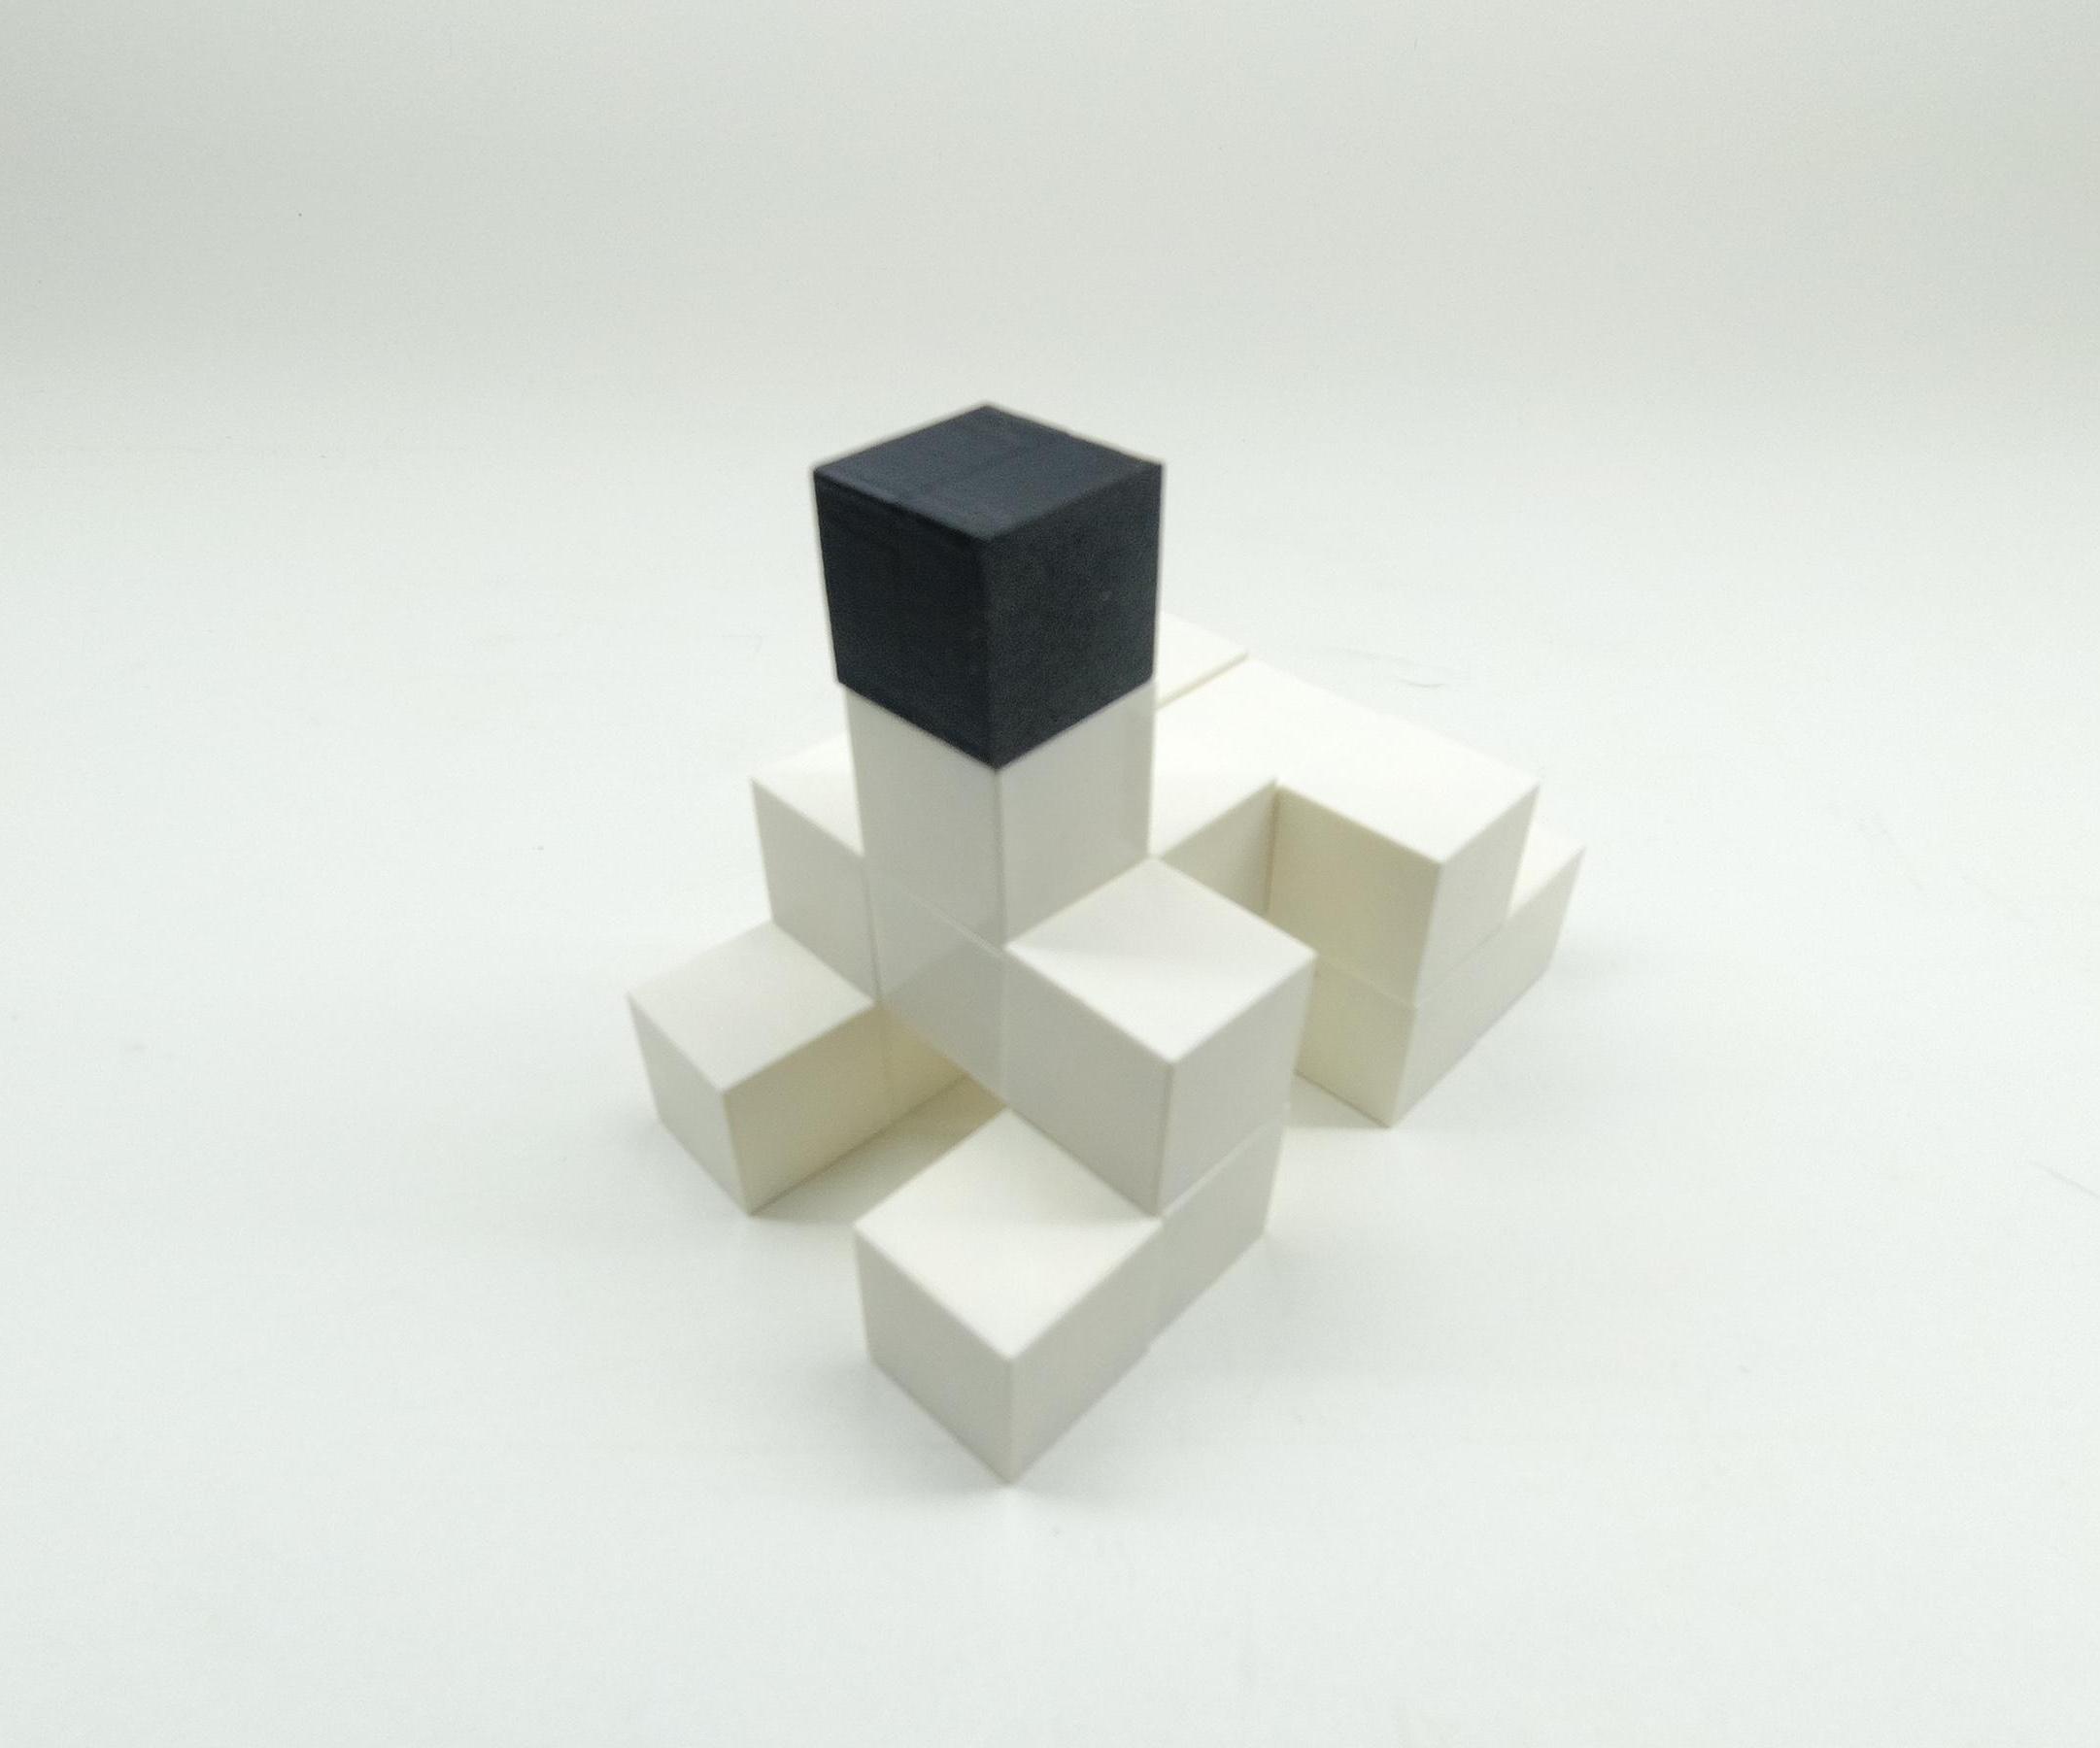 3D Printed Magnetic Building Blocks